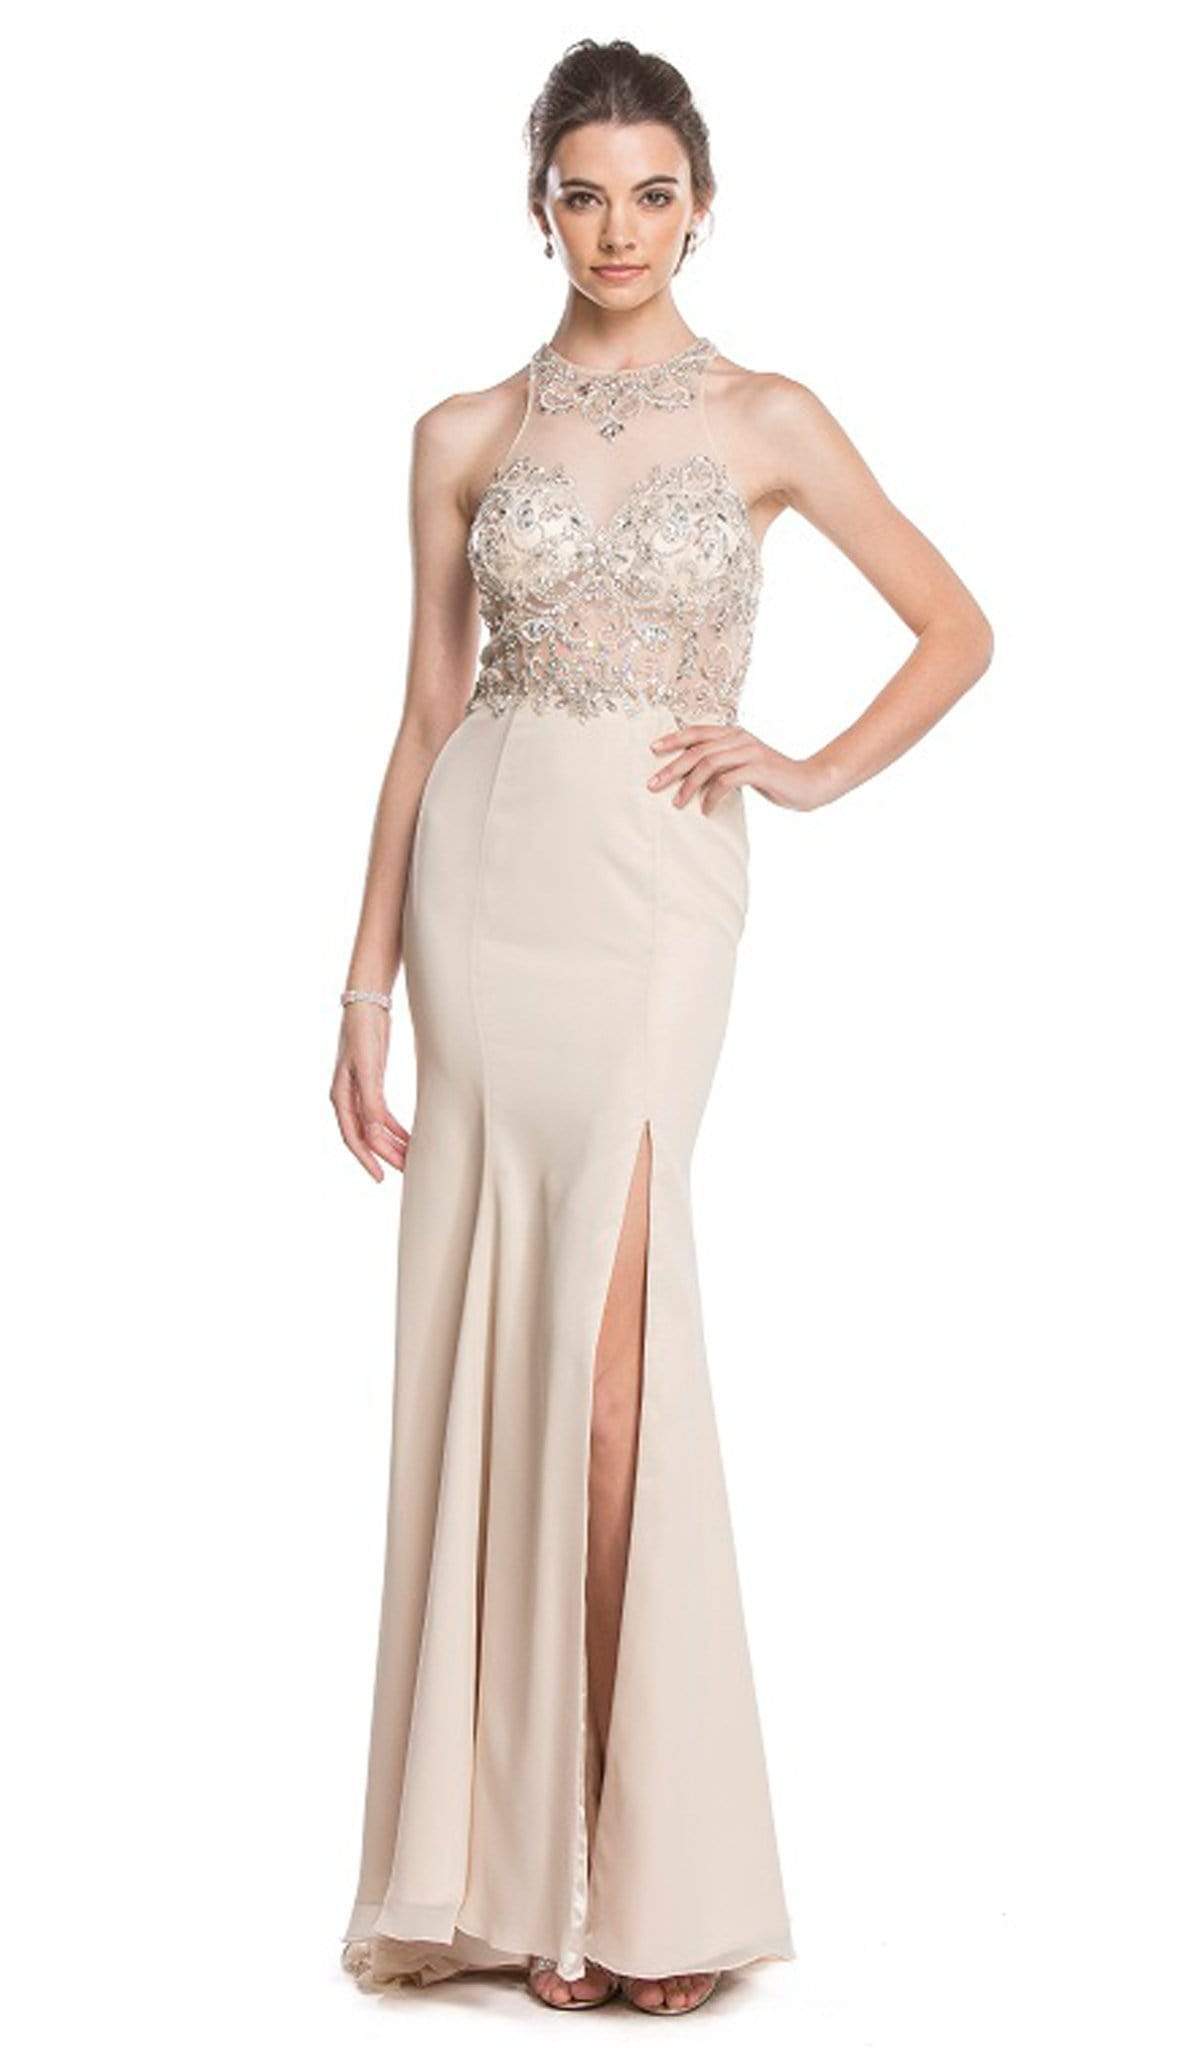 Aspeed Design - Crystal Embellished Evening Dress with Slit
